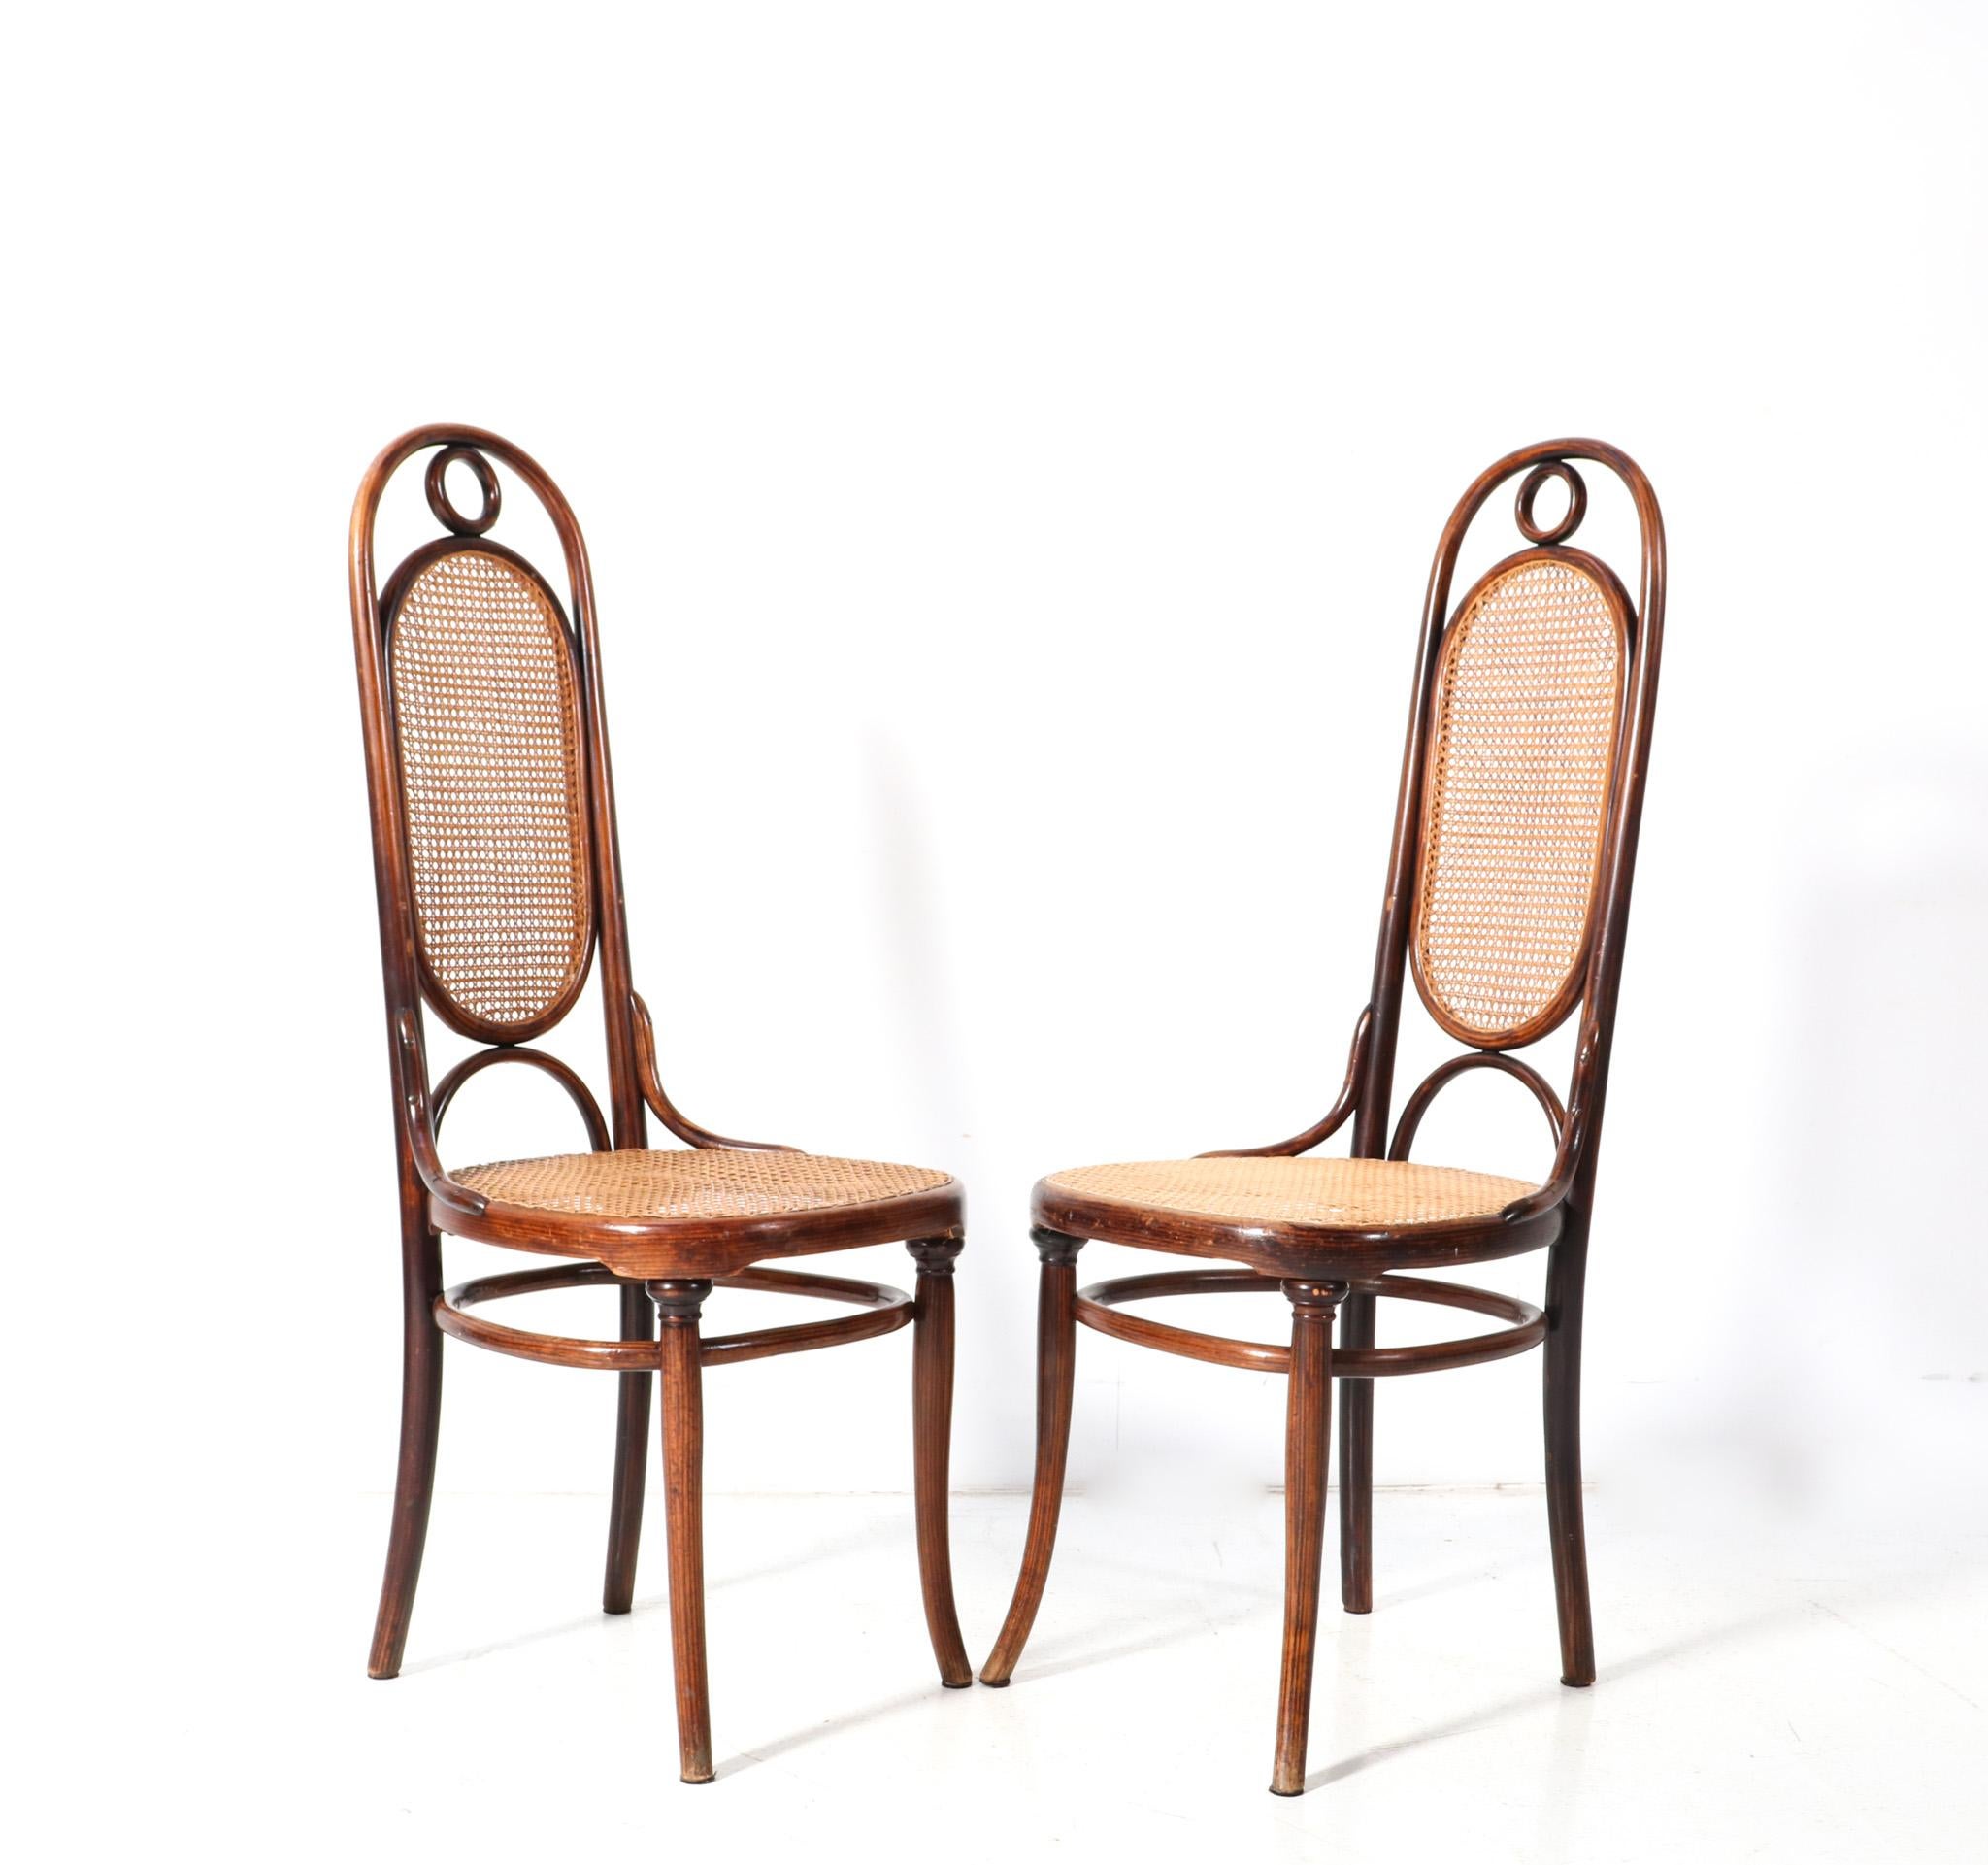 Fin du XIXe siècle Paire de chaises Art Nouveau à haut dossier en hêtre modèle 17 de Michael Thonet, années 1890 en vente